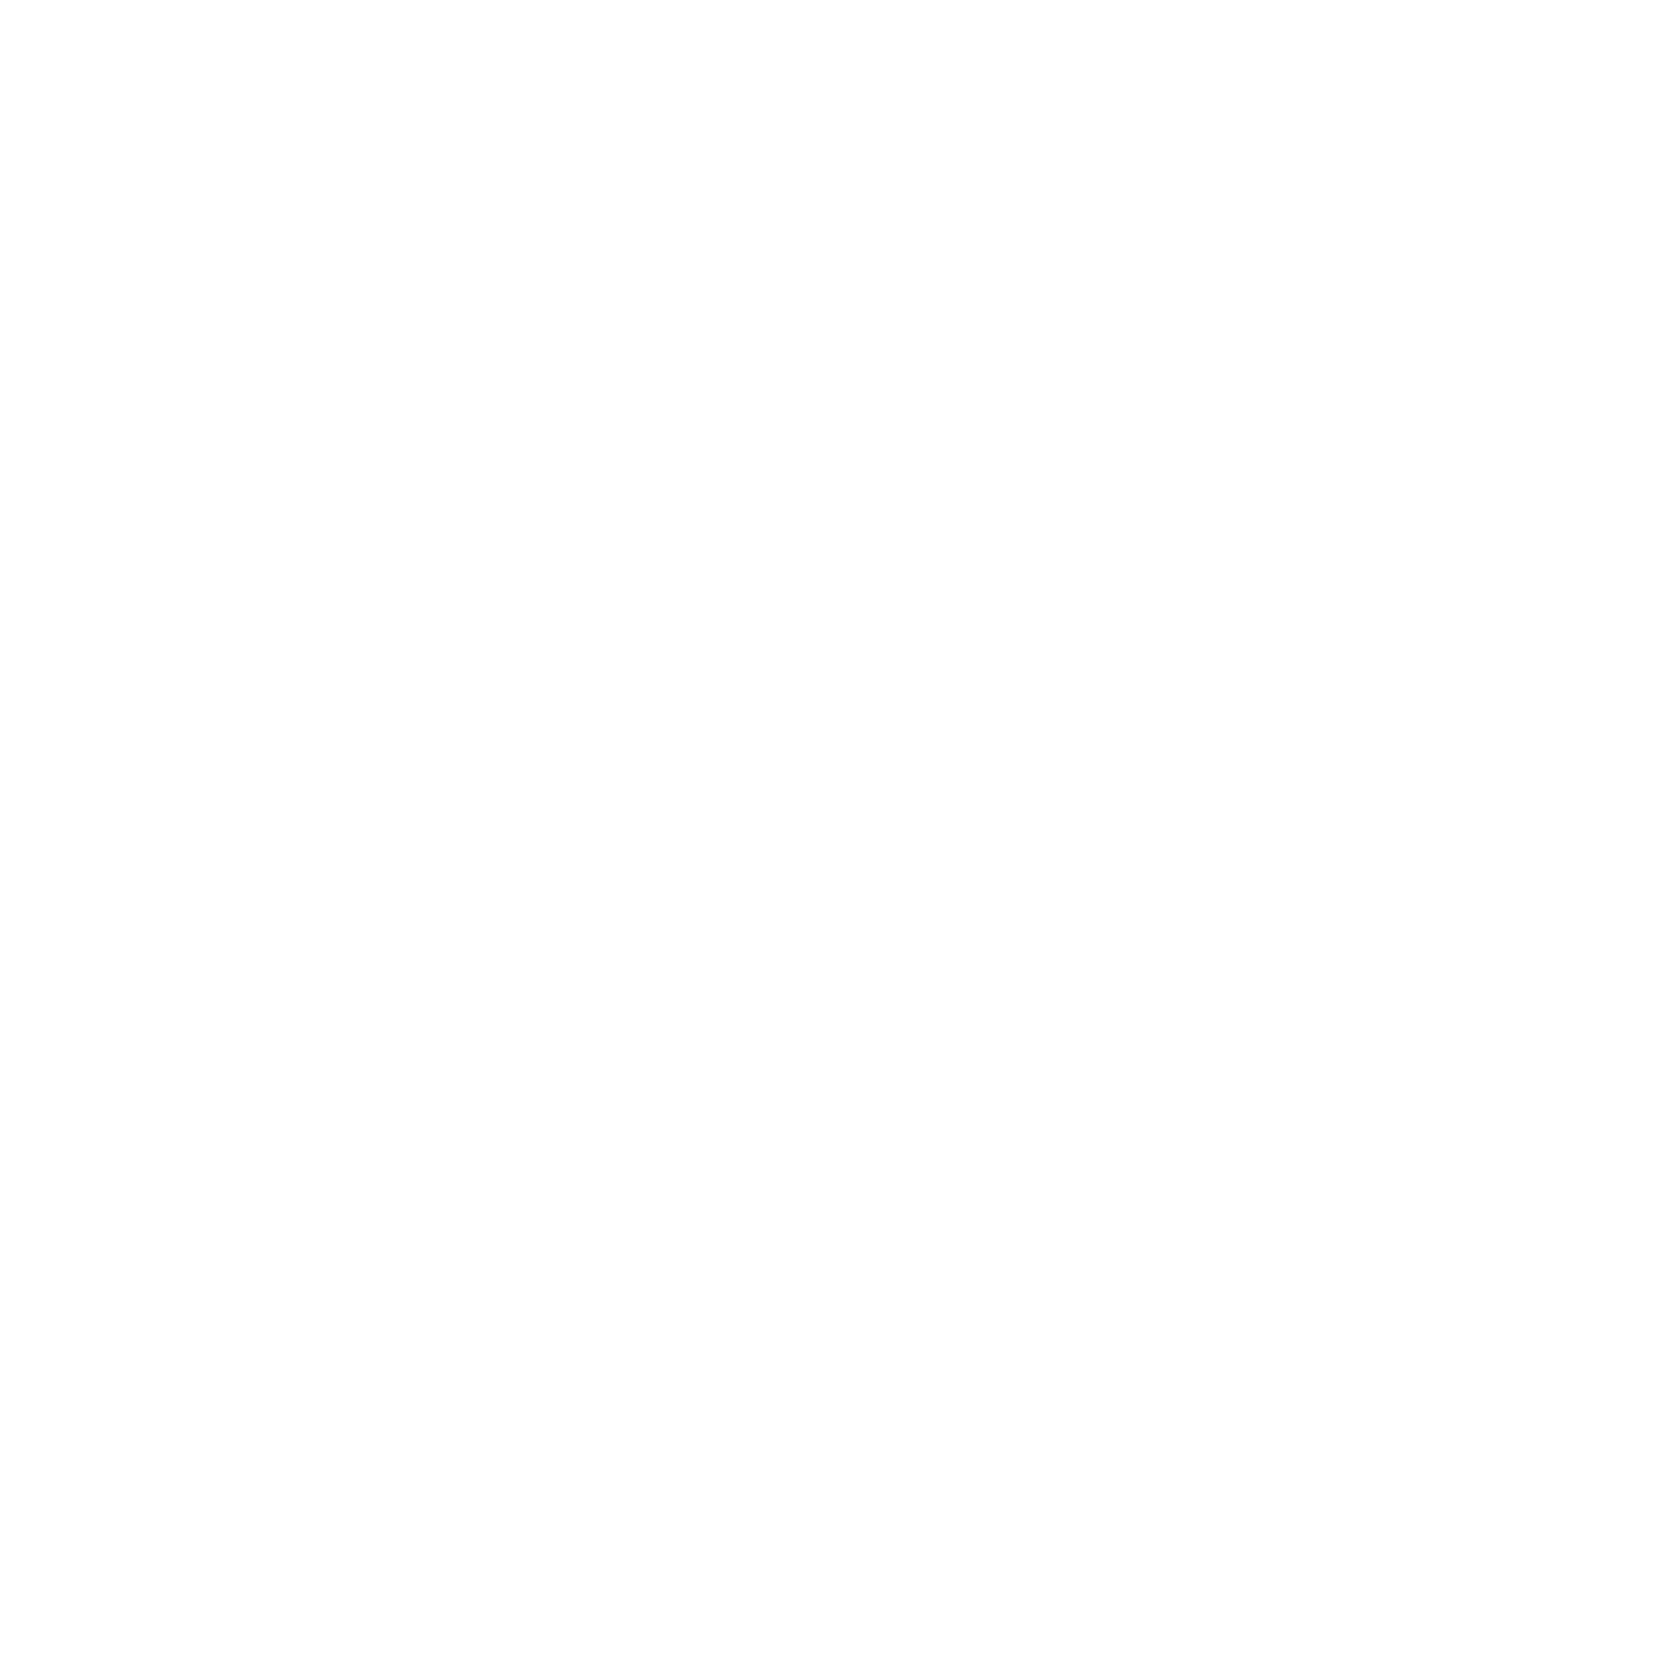 Lazurde Logo